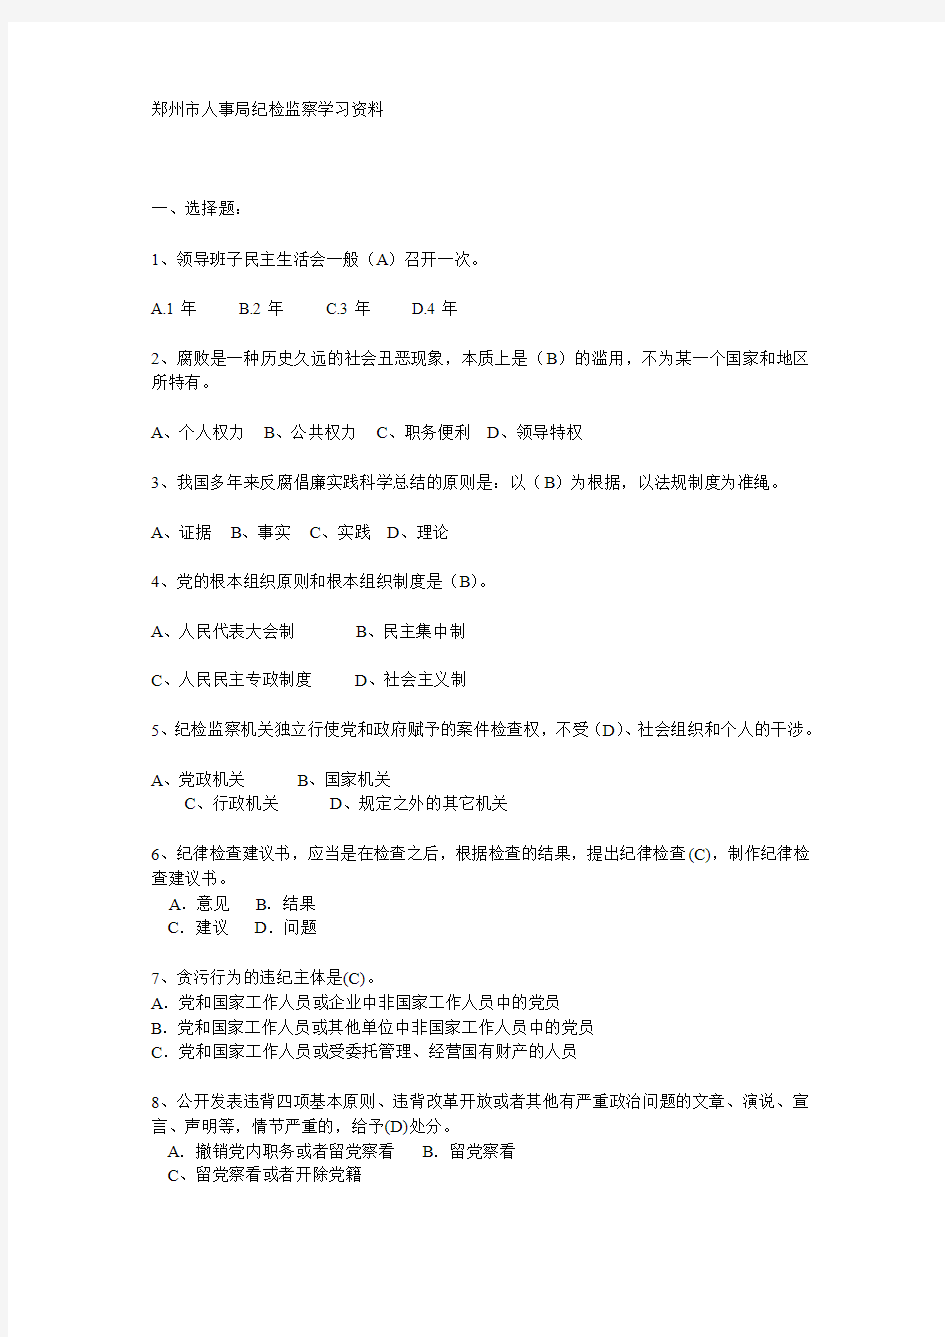 郑州市人事局纪检监察学习资料